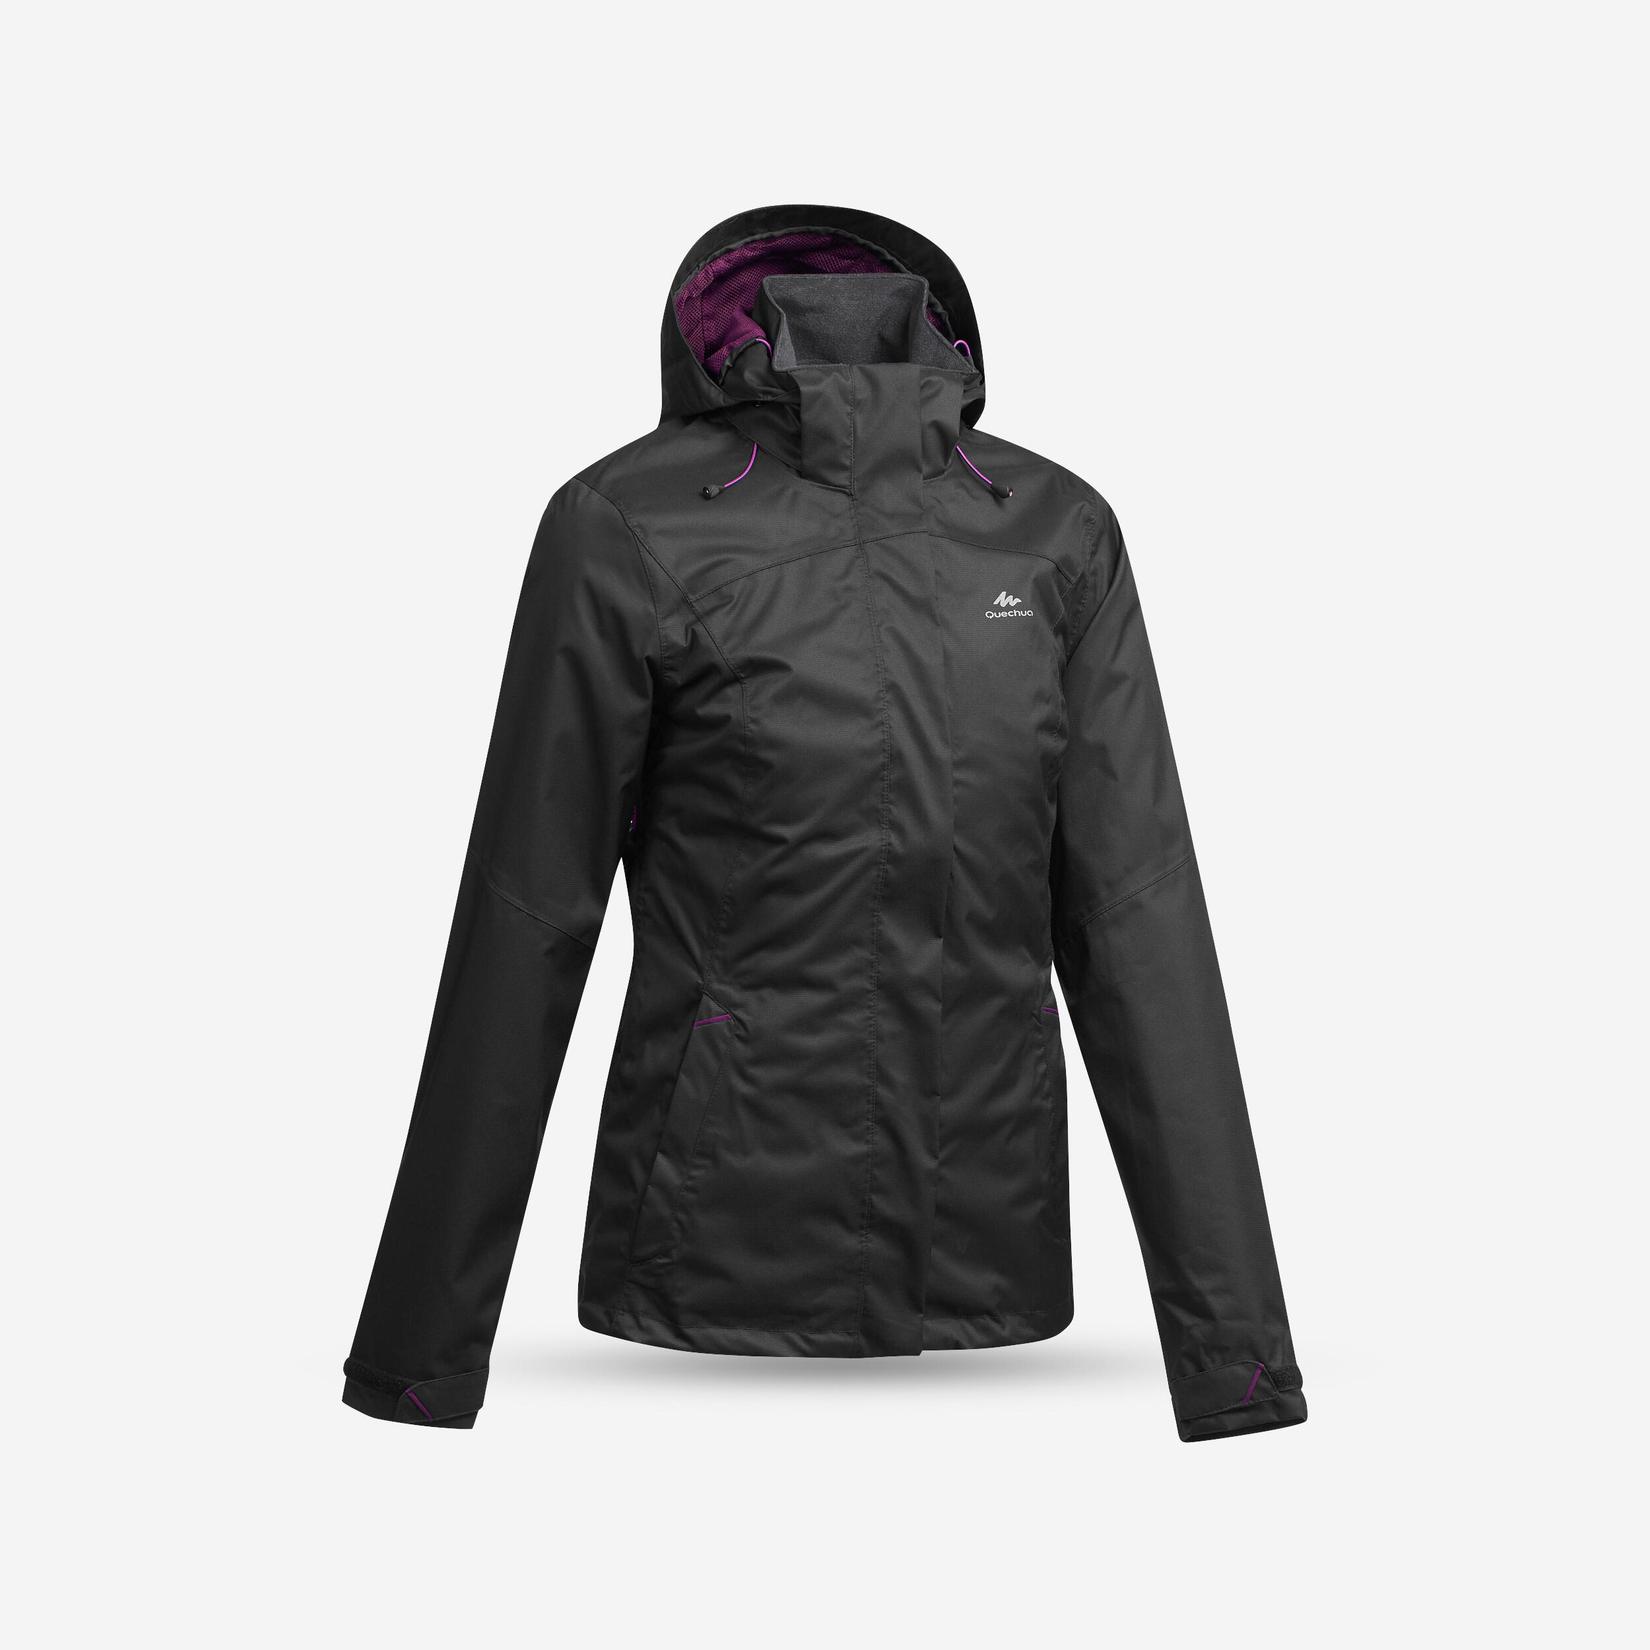 Women’s waterproof mountain walking jacket MH100 offers at R 599 in Decathlon